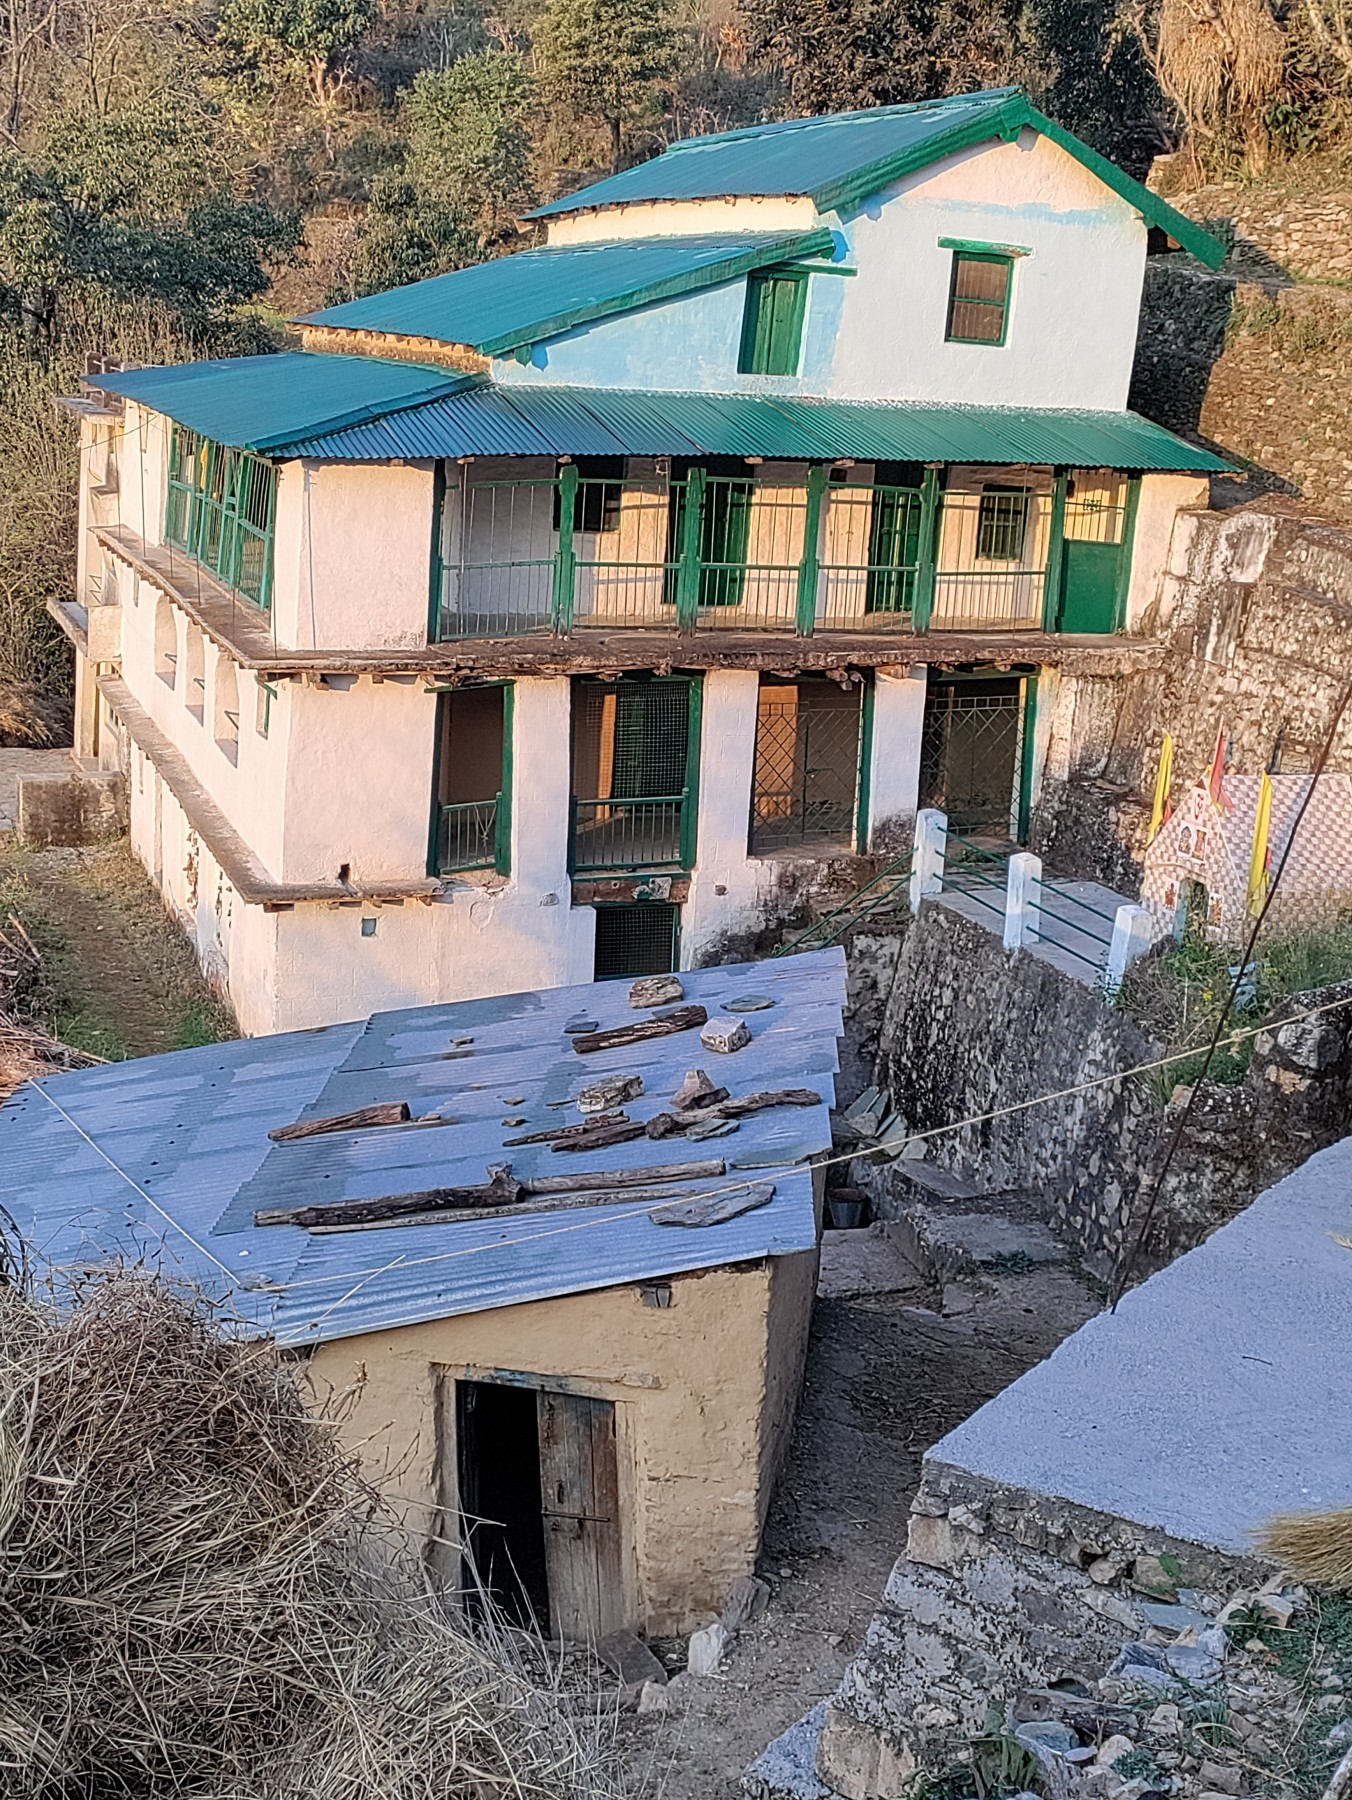 Awai village, Pauri Garhwal